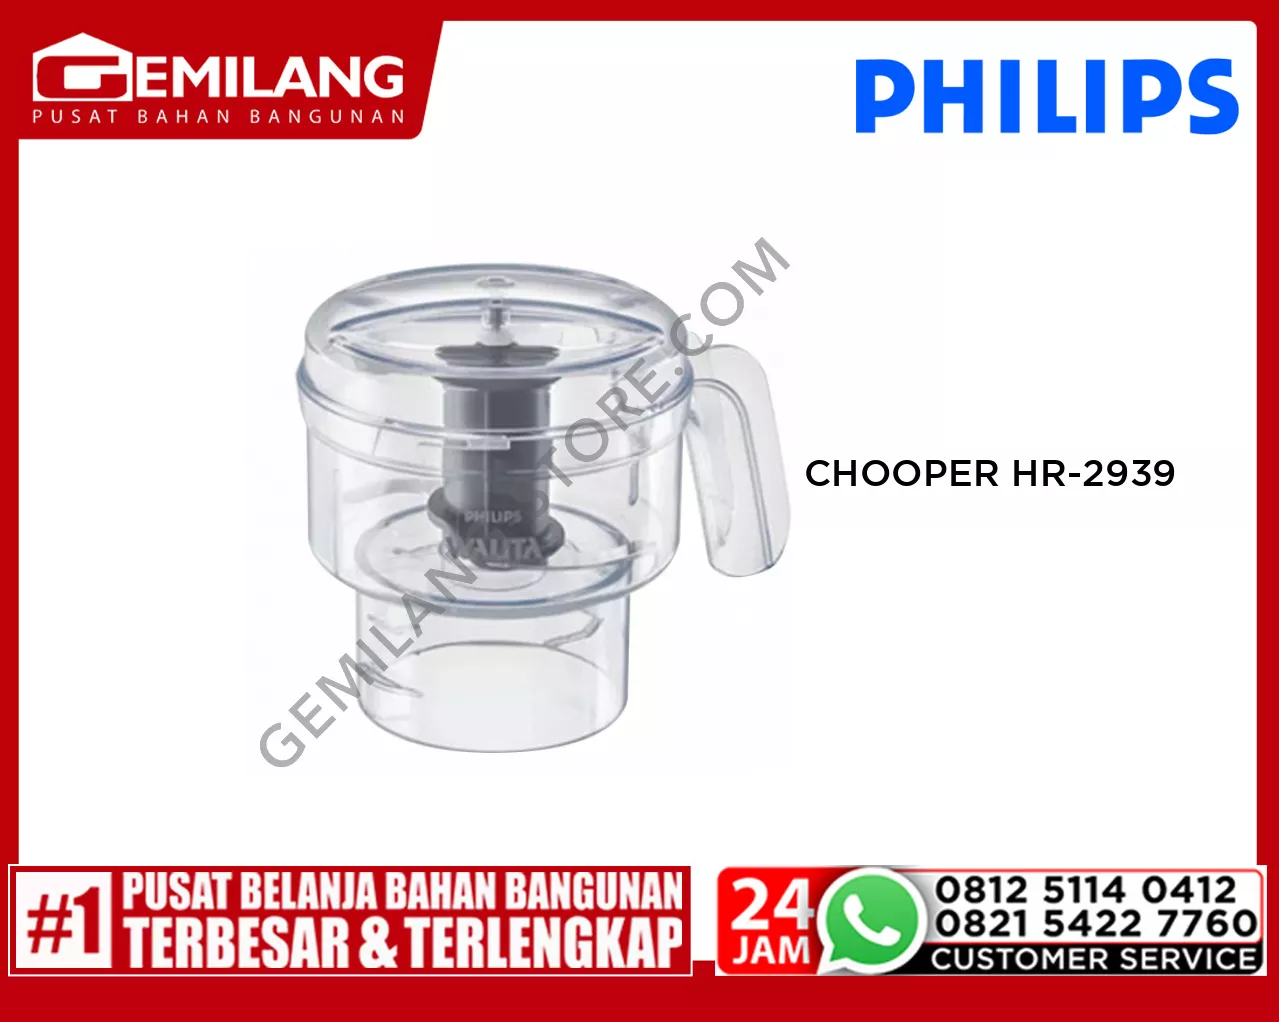 PHILIPS CHOOPER HR-2939